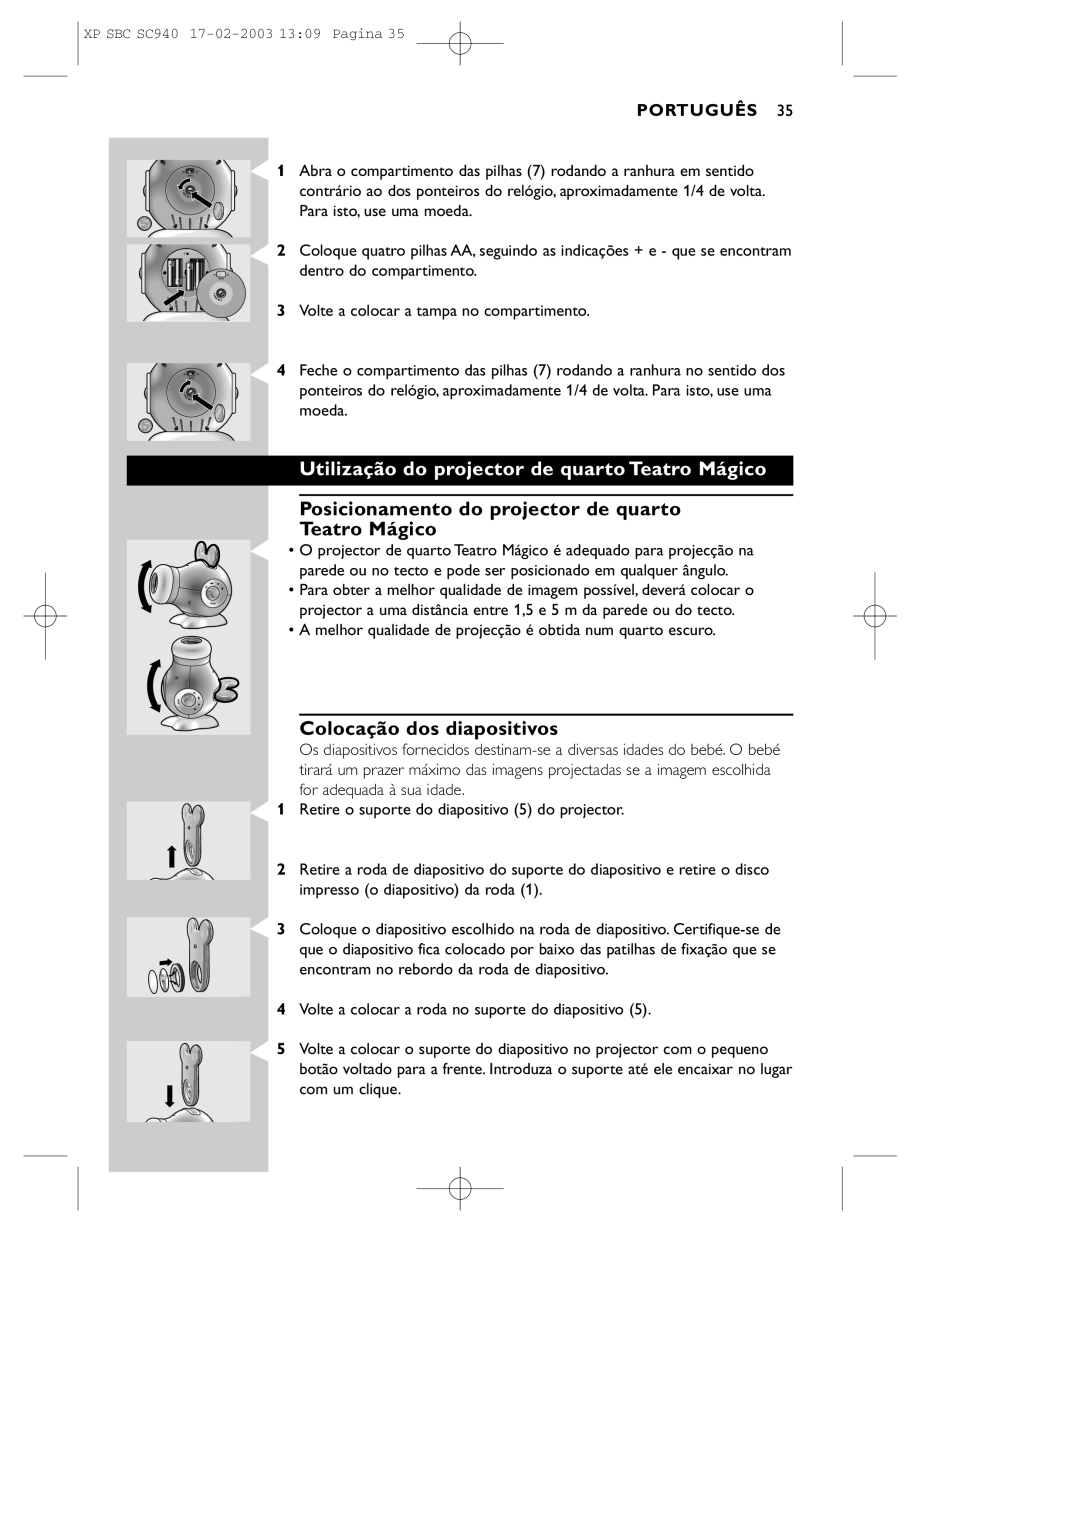 Philips SC940 manual Utilização do projector de quarto Teatro Mágico, Posicionamento do projector de quarto Teatro Mágico 